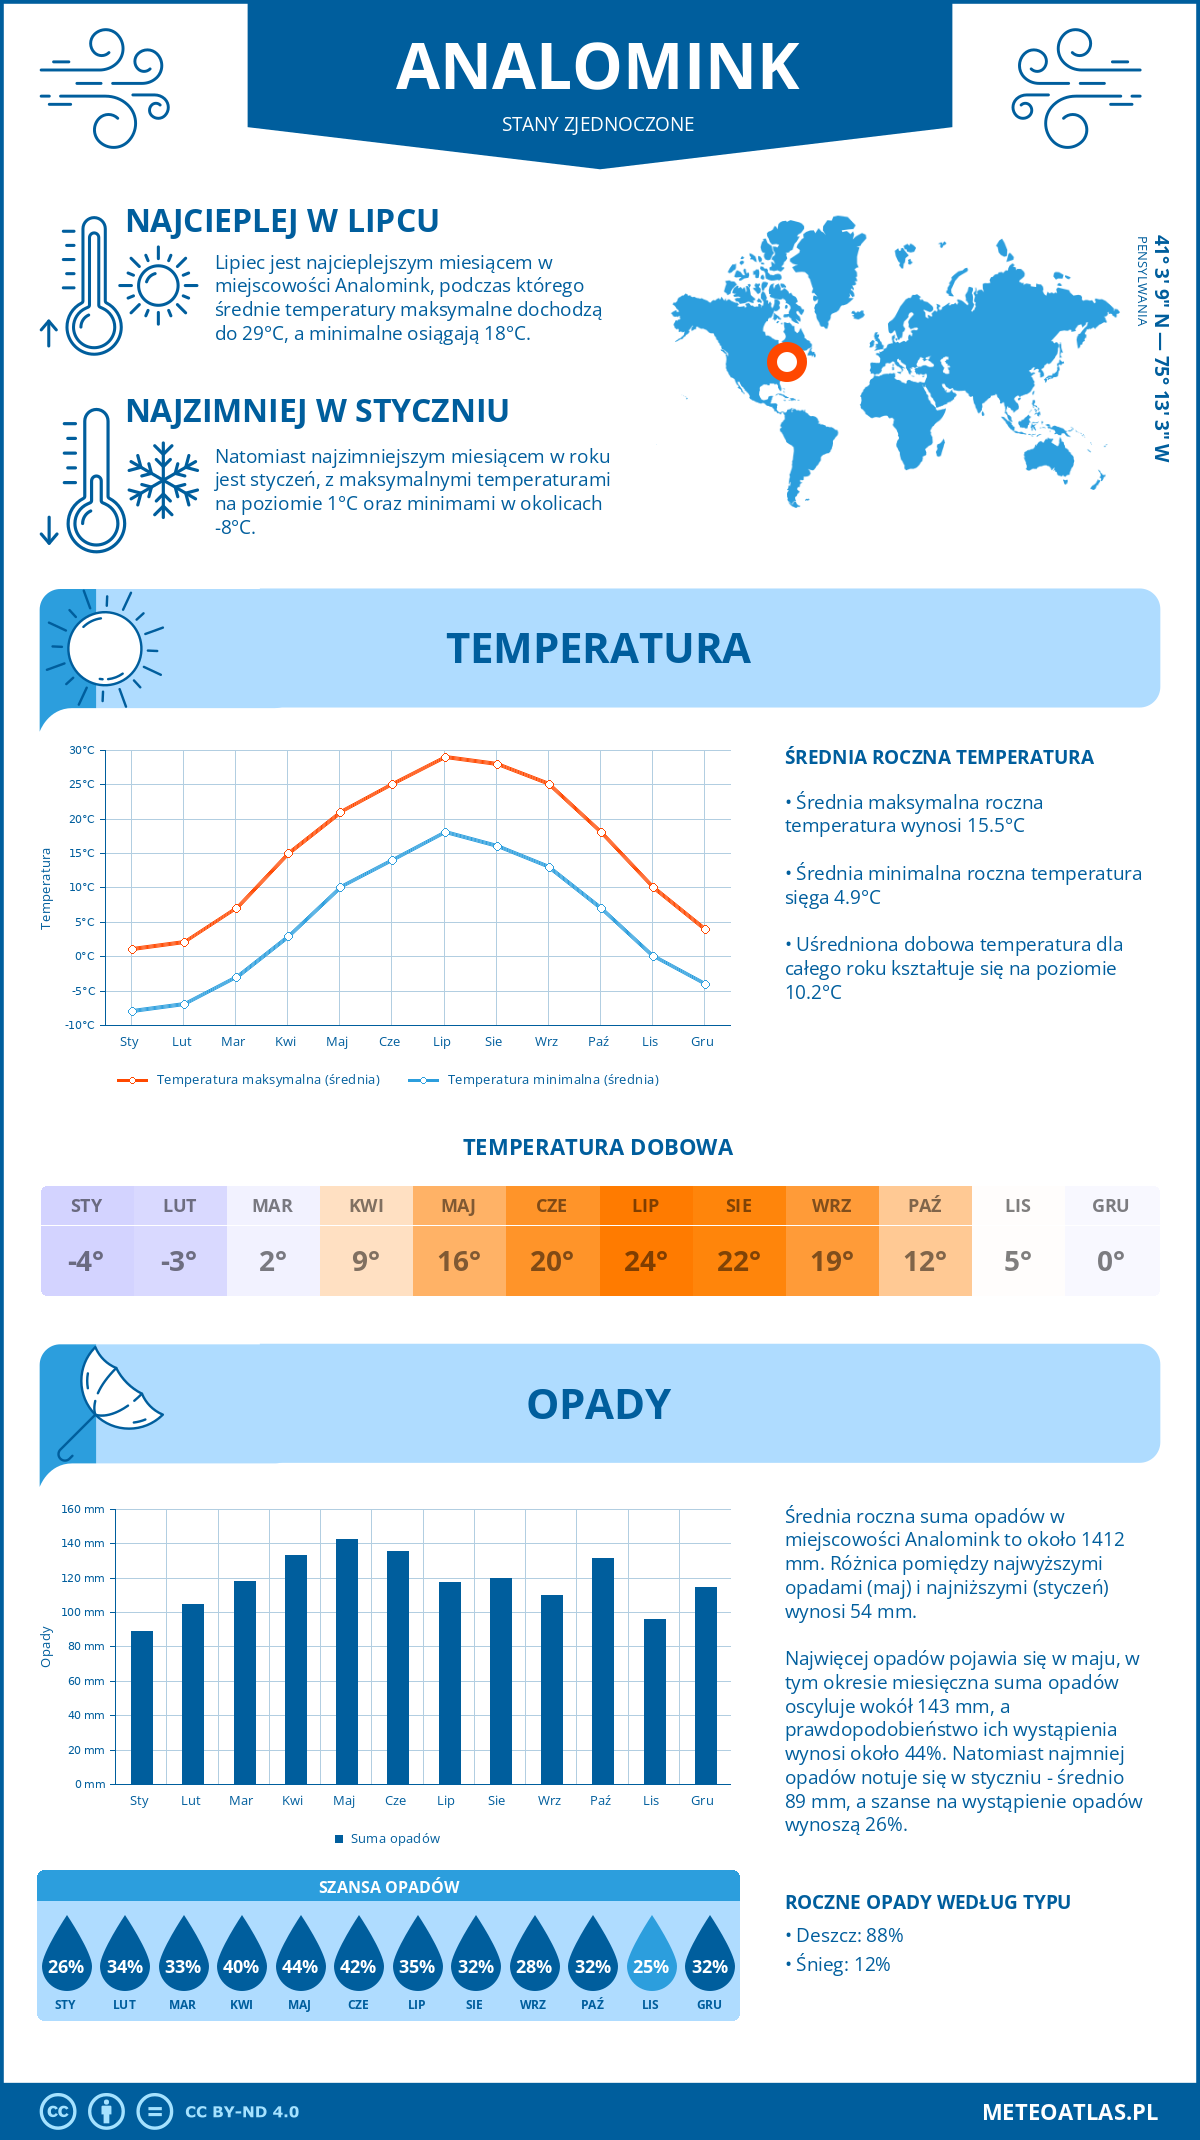 Pogoda Analomink (Stany Zjednoczone). Temperatura oraz opady.